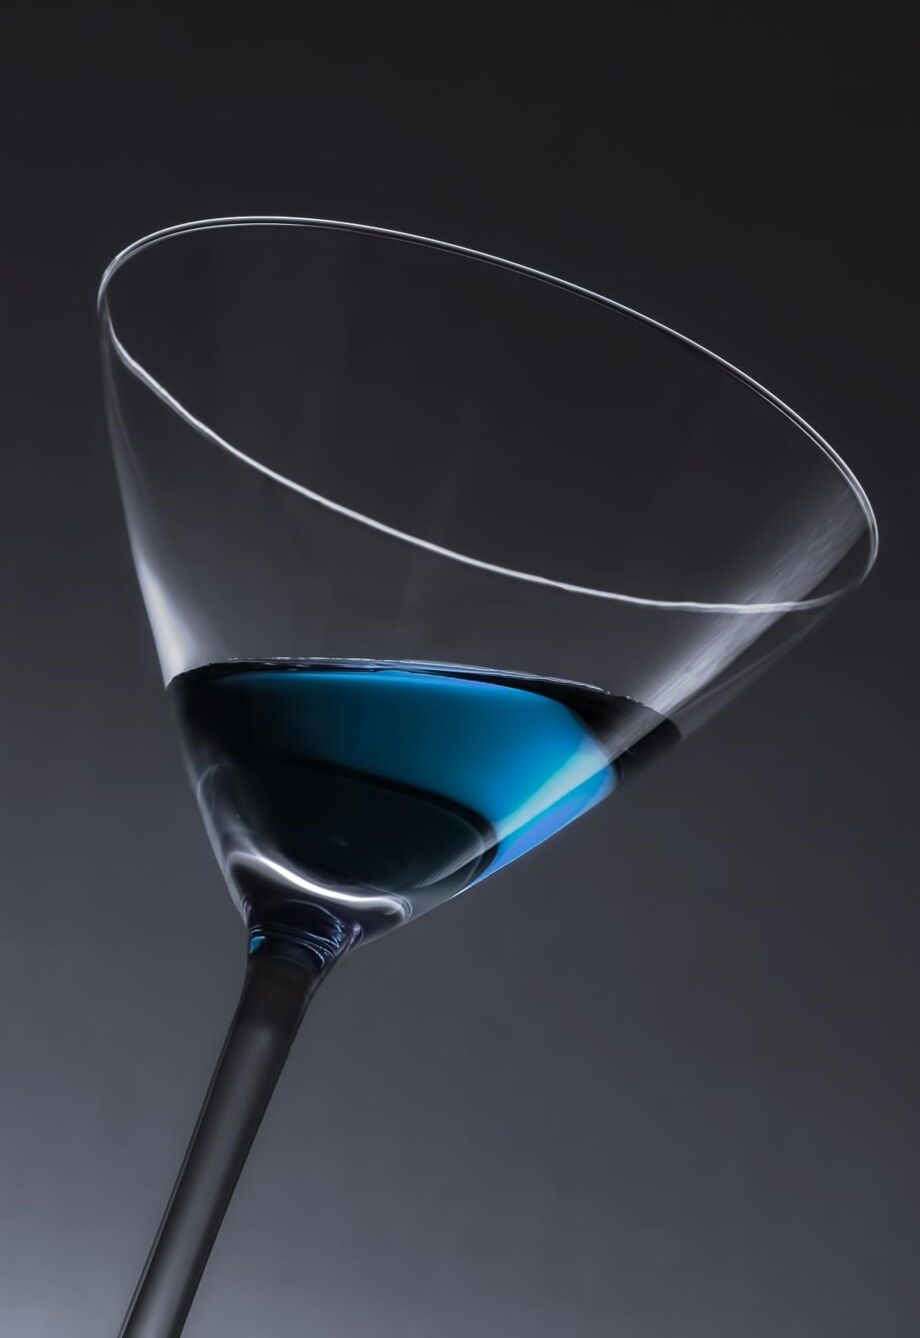 Produktfotografie: Cocktailglas mit blauem Drink